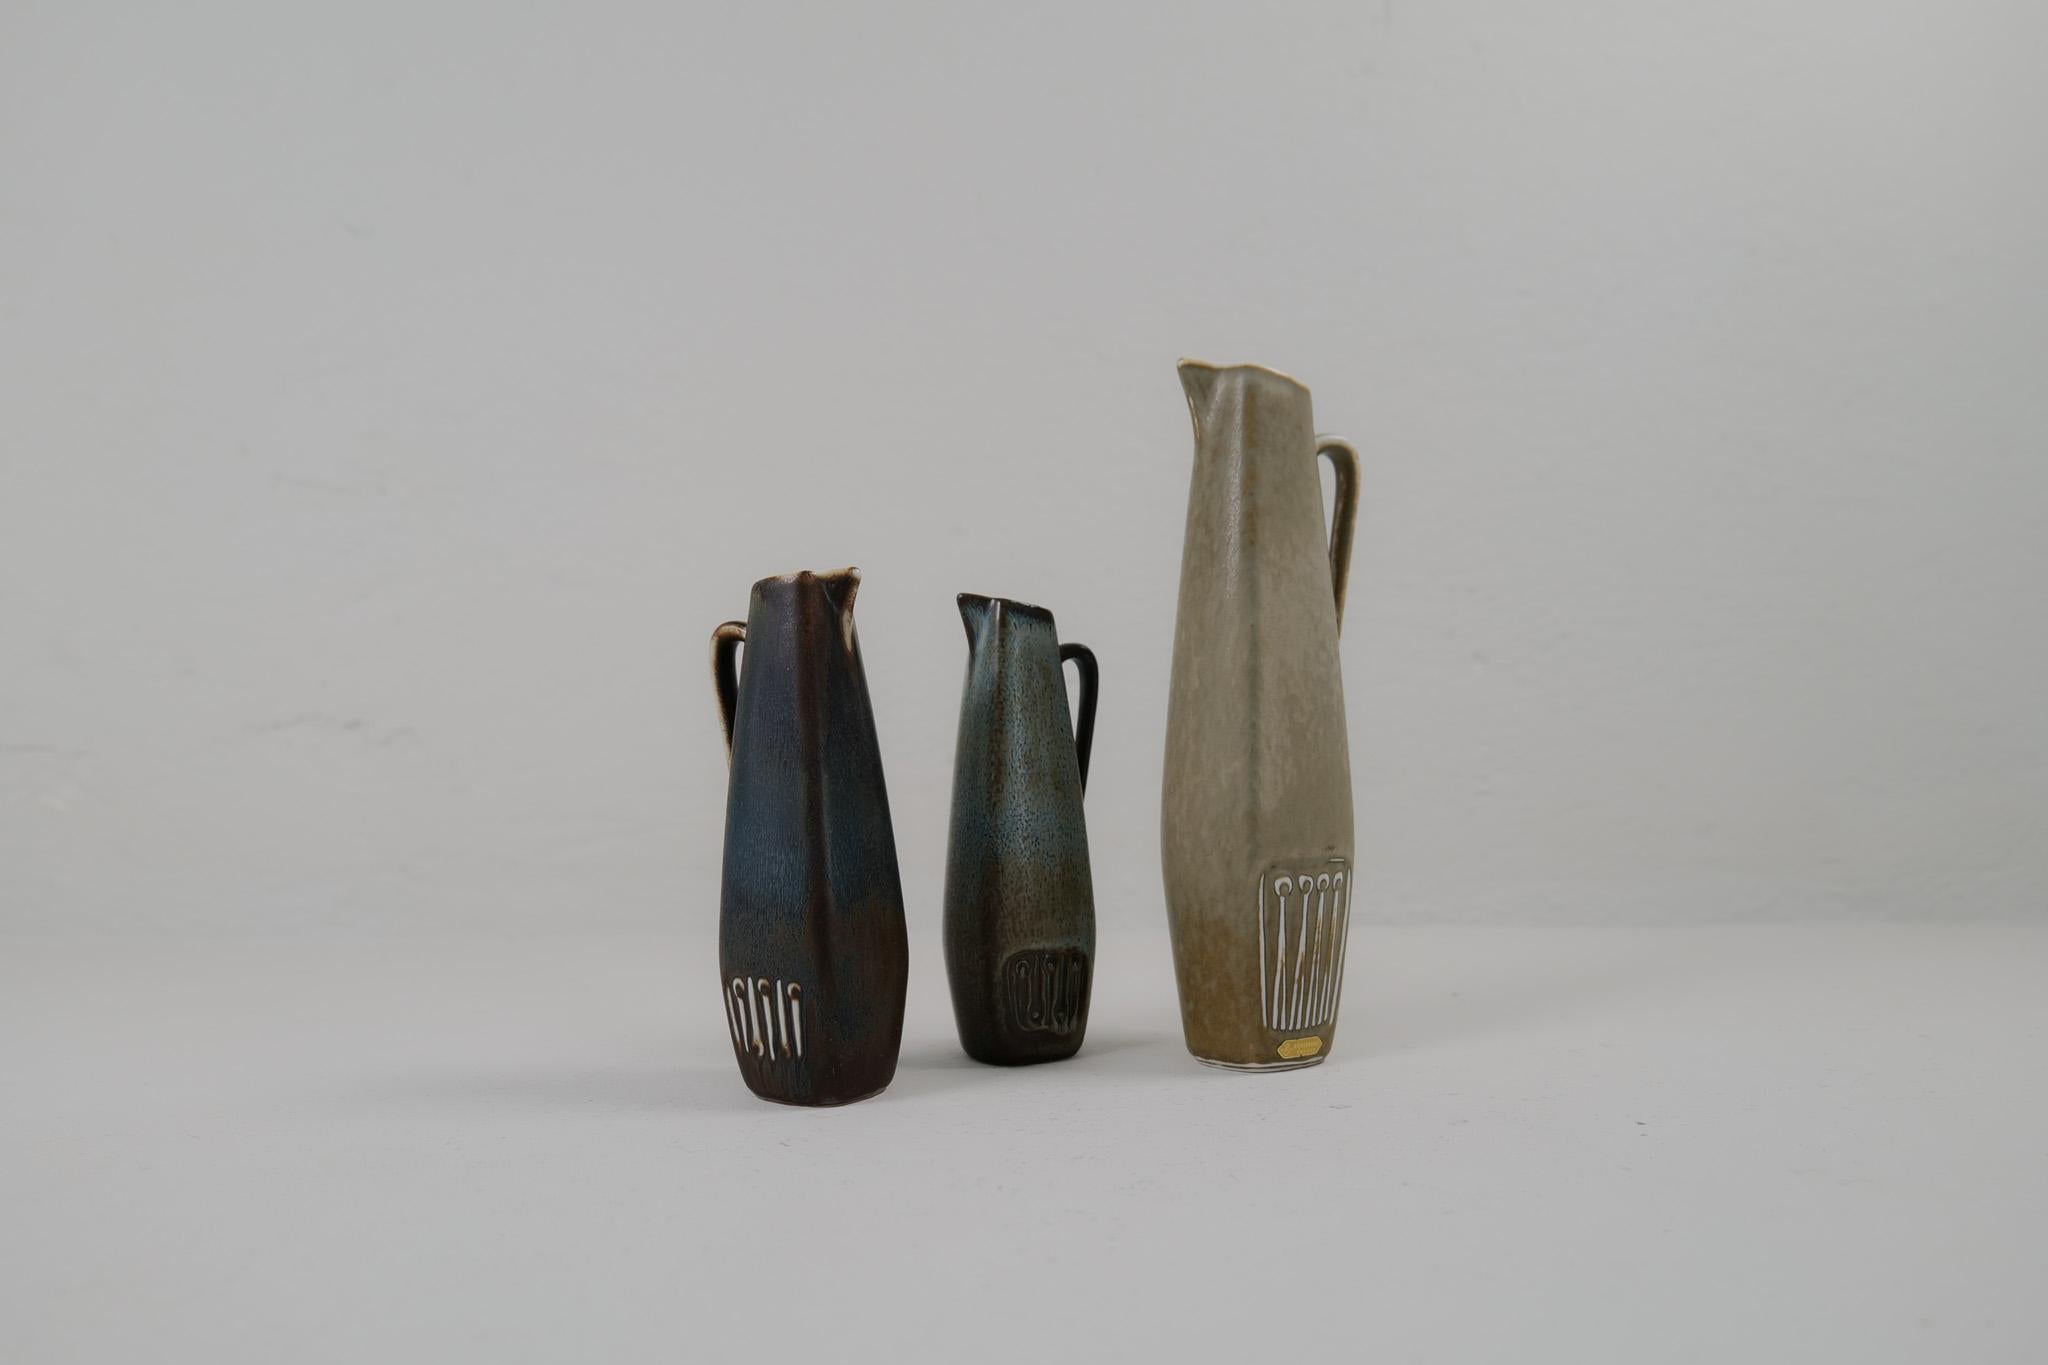 Drei wunderschöne Stücke, die in den 1950er Jahren in der Fabrik Rörstrand in Schweden hergestellt und von Gunnar Nylund entworfen wurden

Die Vasen haben ein schönes antikes Aussehen in einer modernen Form. Die Vasen sind schön geformt und haben